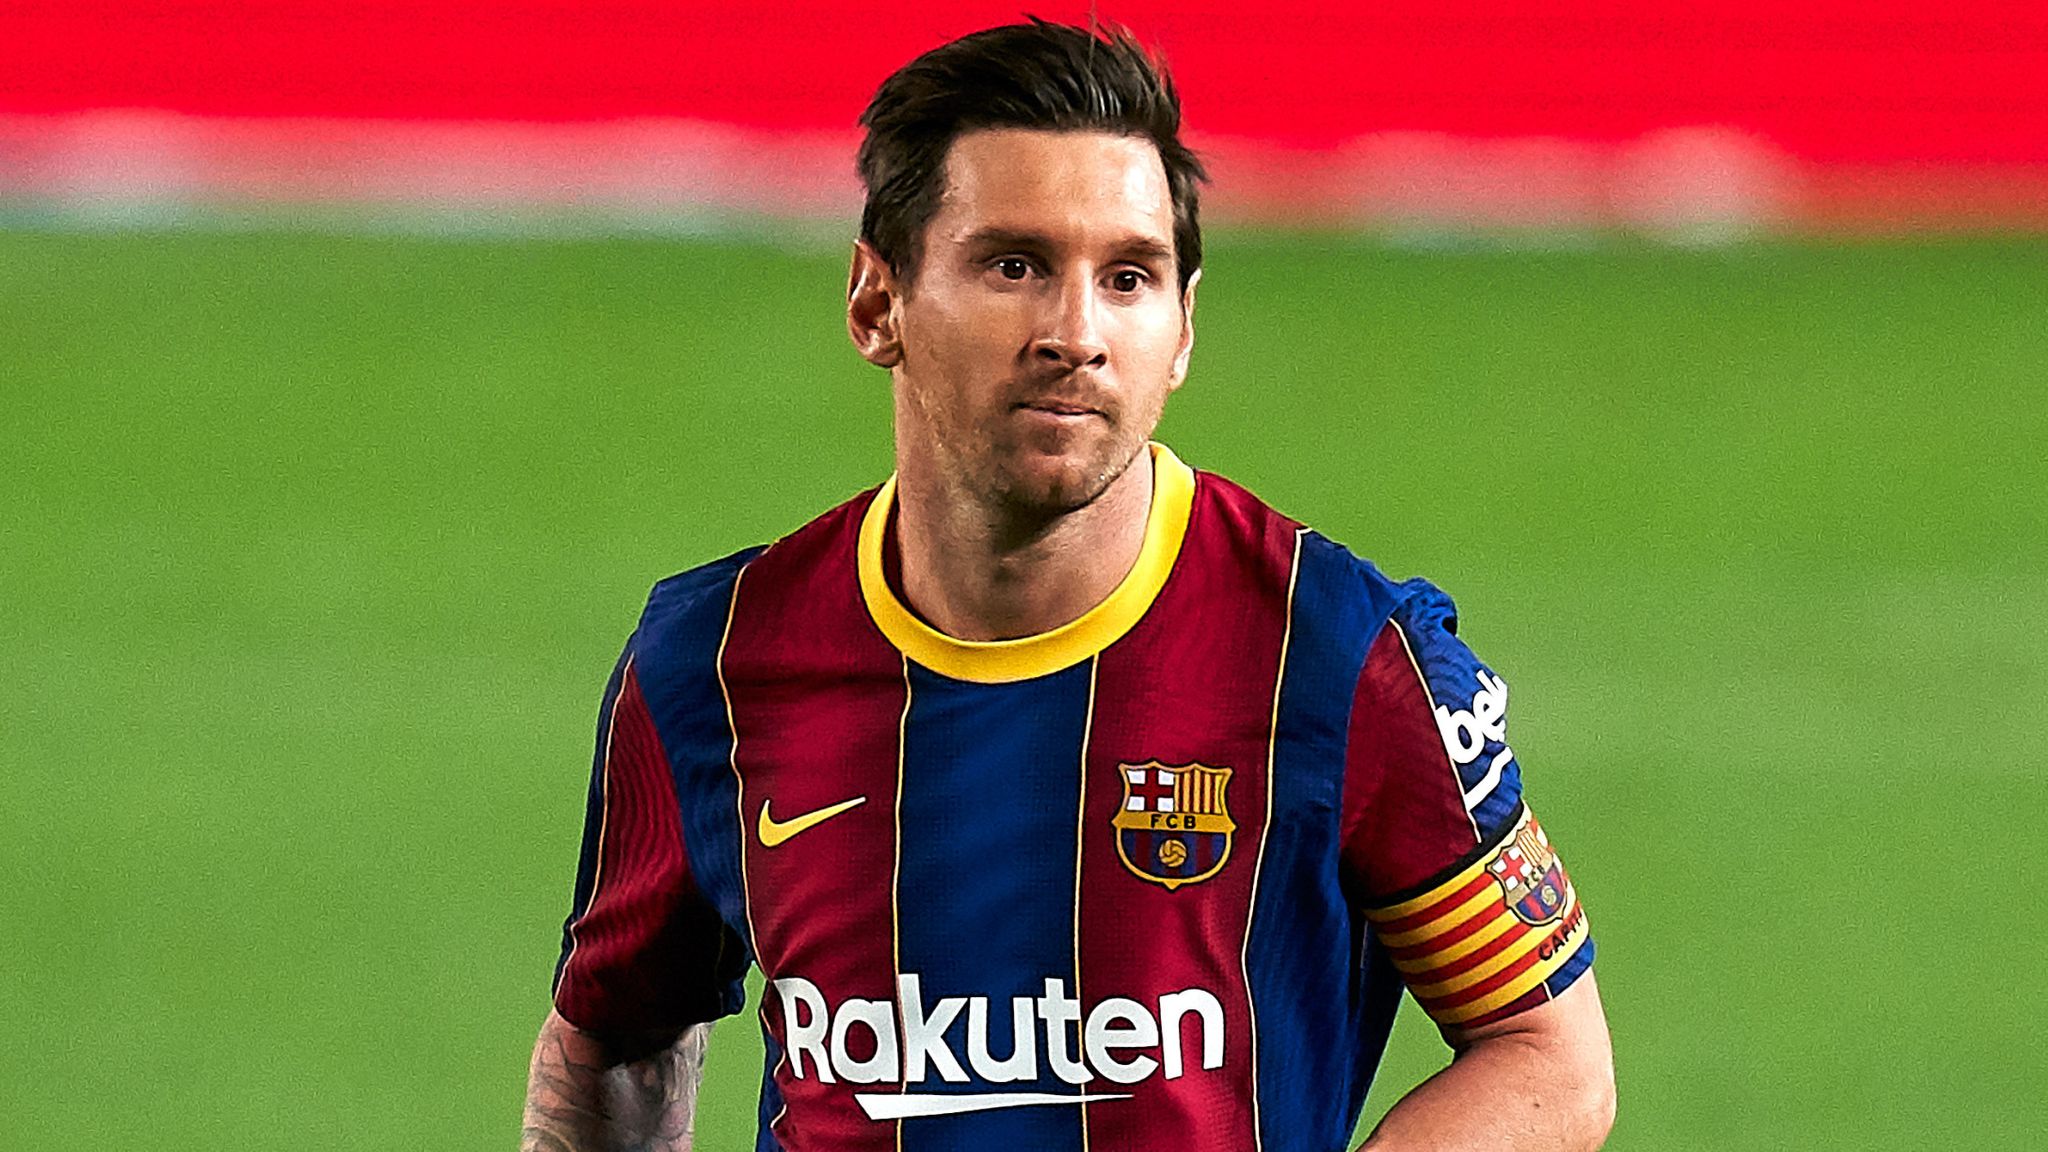 L’ancien coéquipier de Lionel Messi veut qu’il ramène la gloire à Barcelone